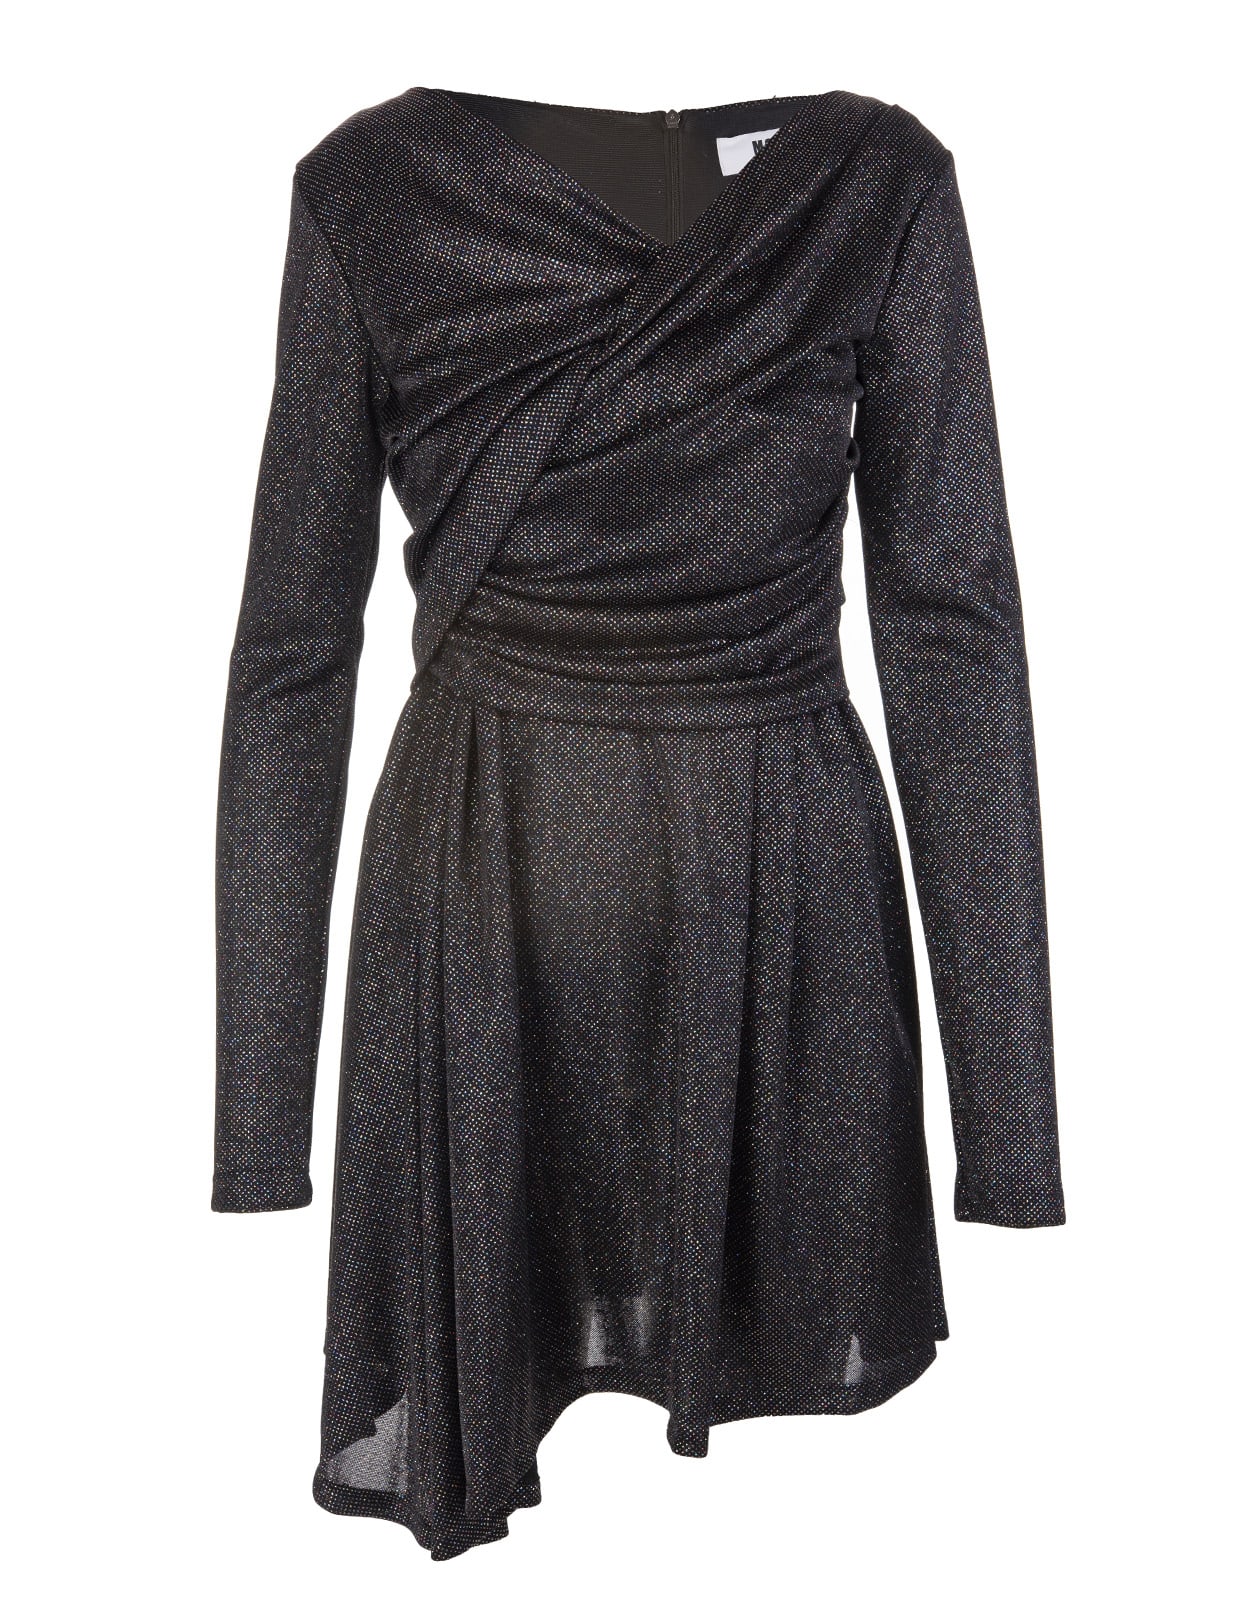 MSGM Mini Dress In Black Glittery Jersey